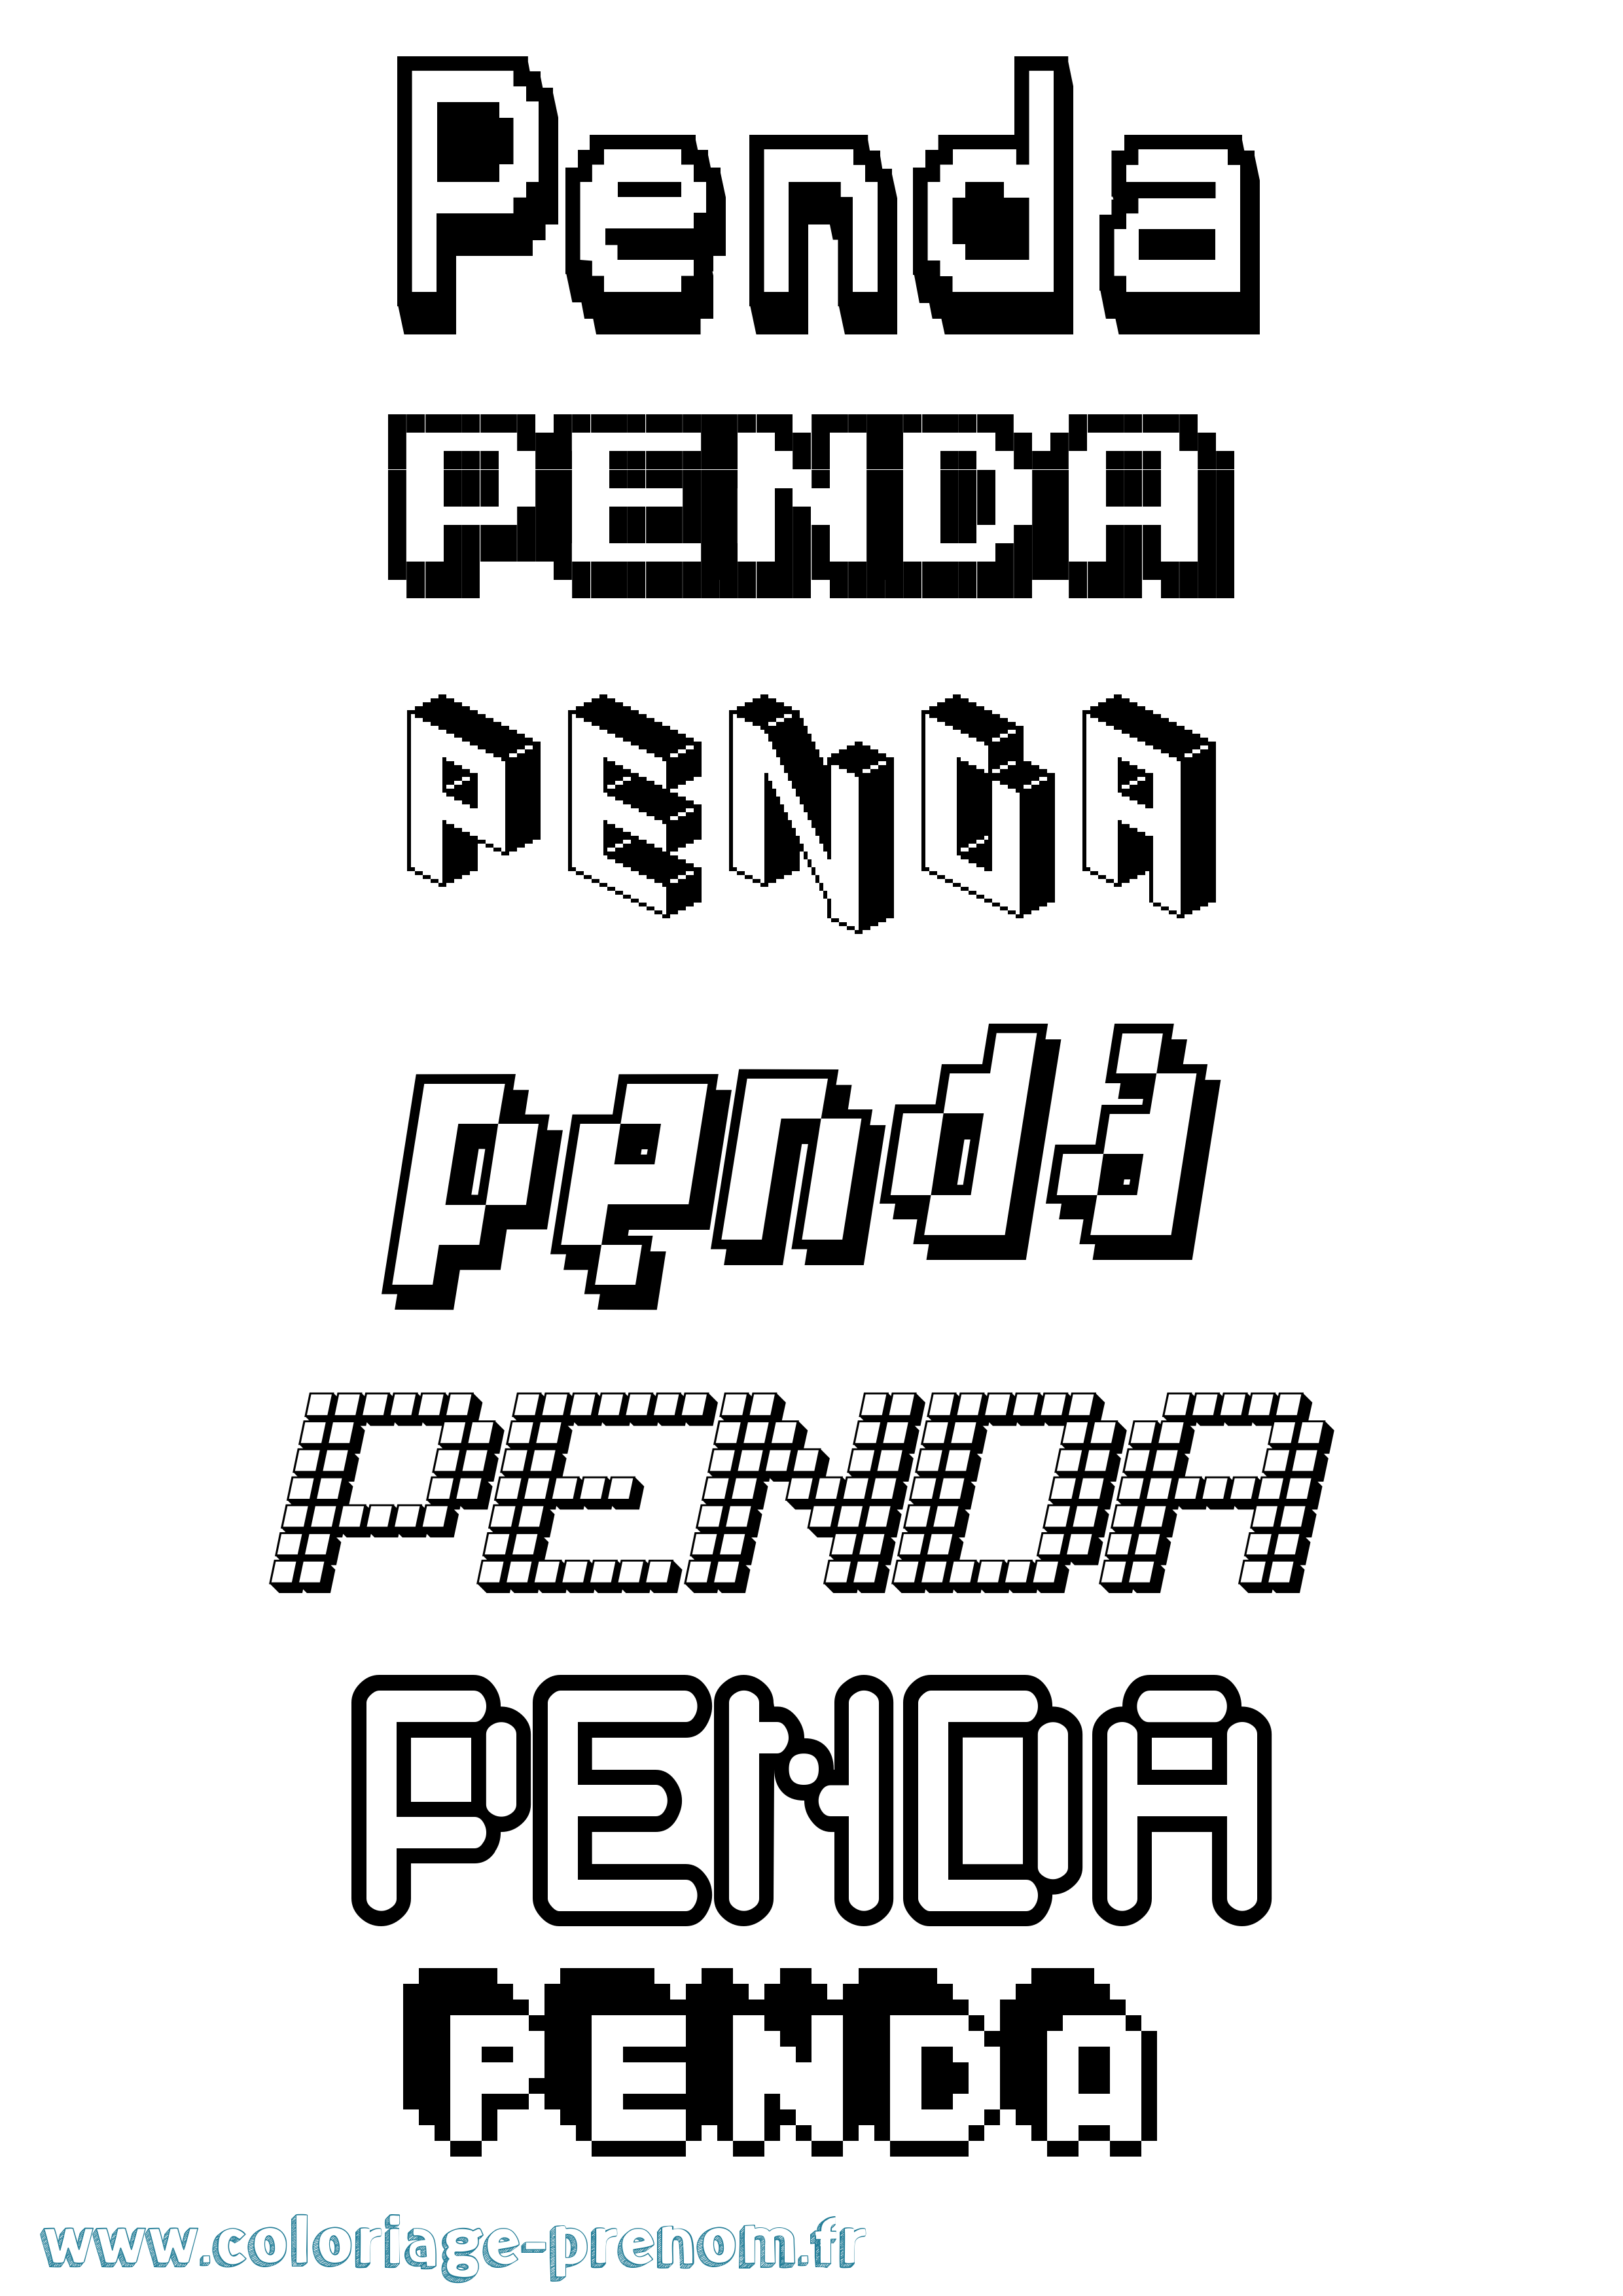 Coloriage prénom Penda Pixel